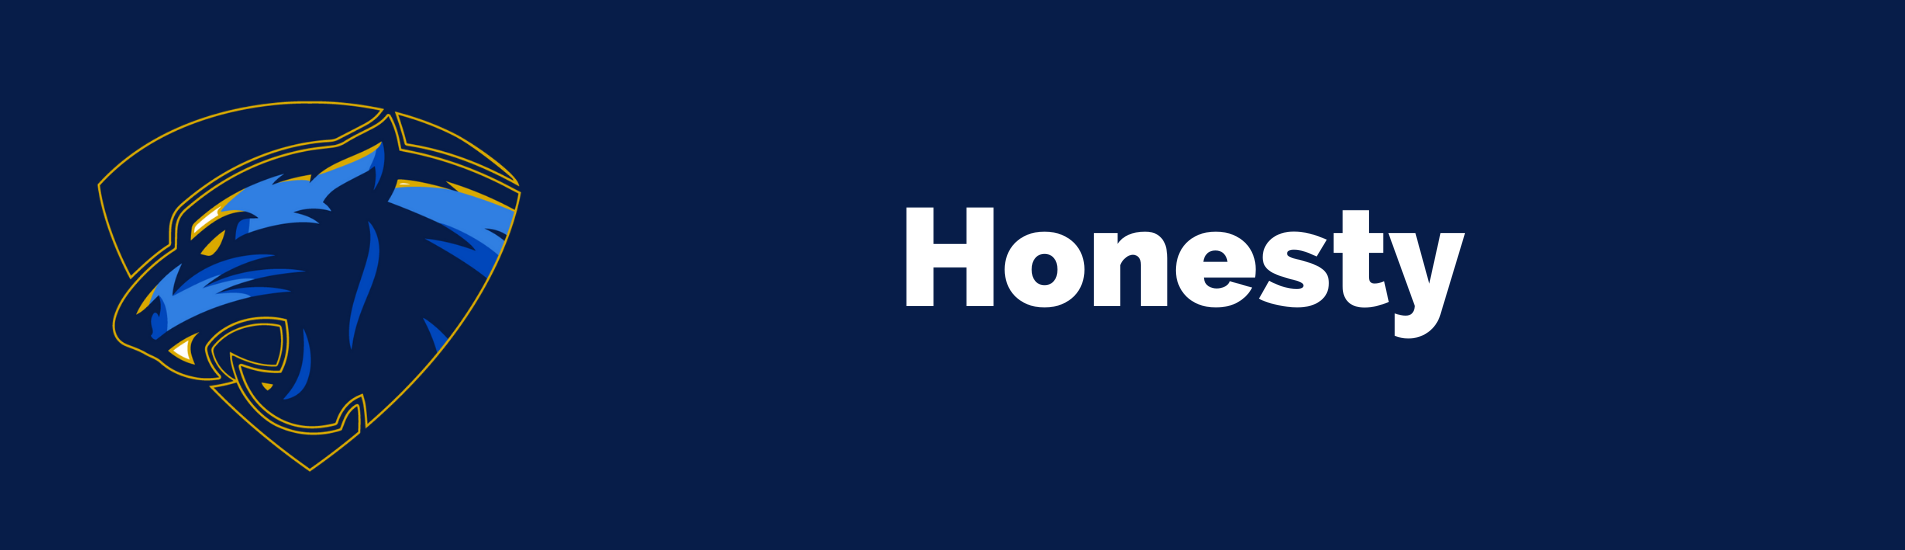 Honesty value banner